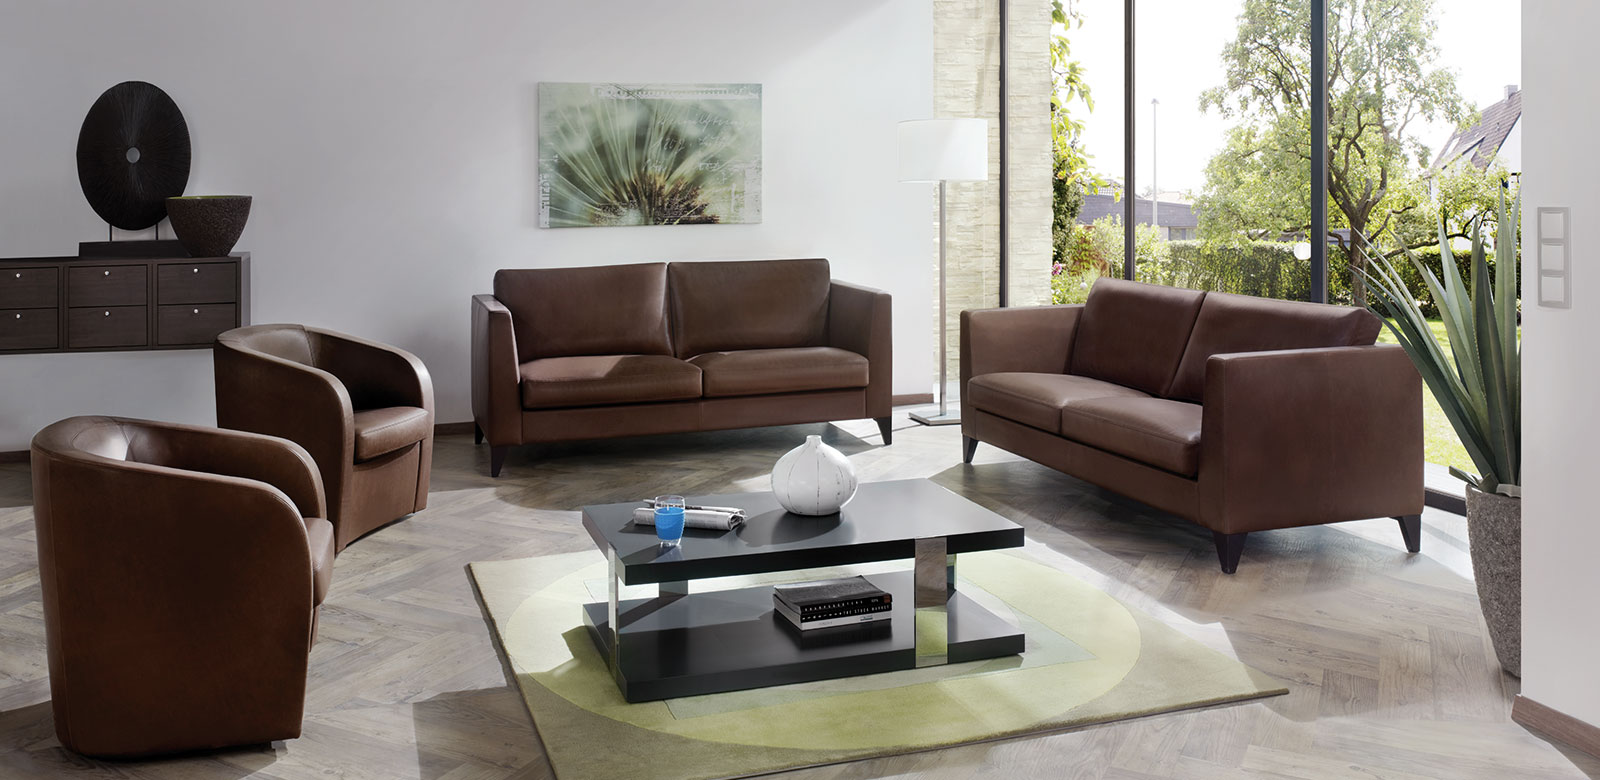 Zwei CL850 Sofas aus braunem Leder mit passenden Sesseln und eckigem Couchtisch im Wohnzimmer mit Gartenzugang